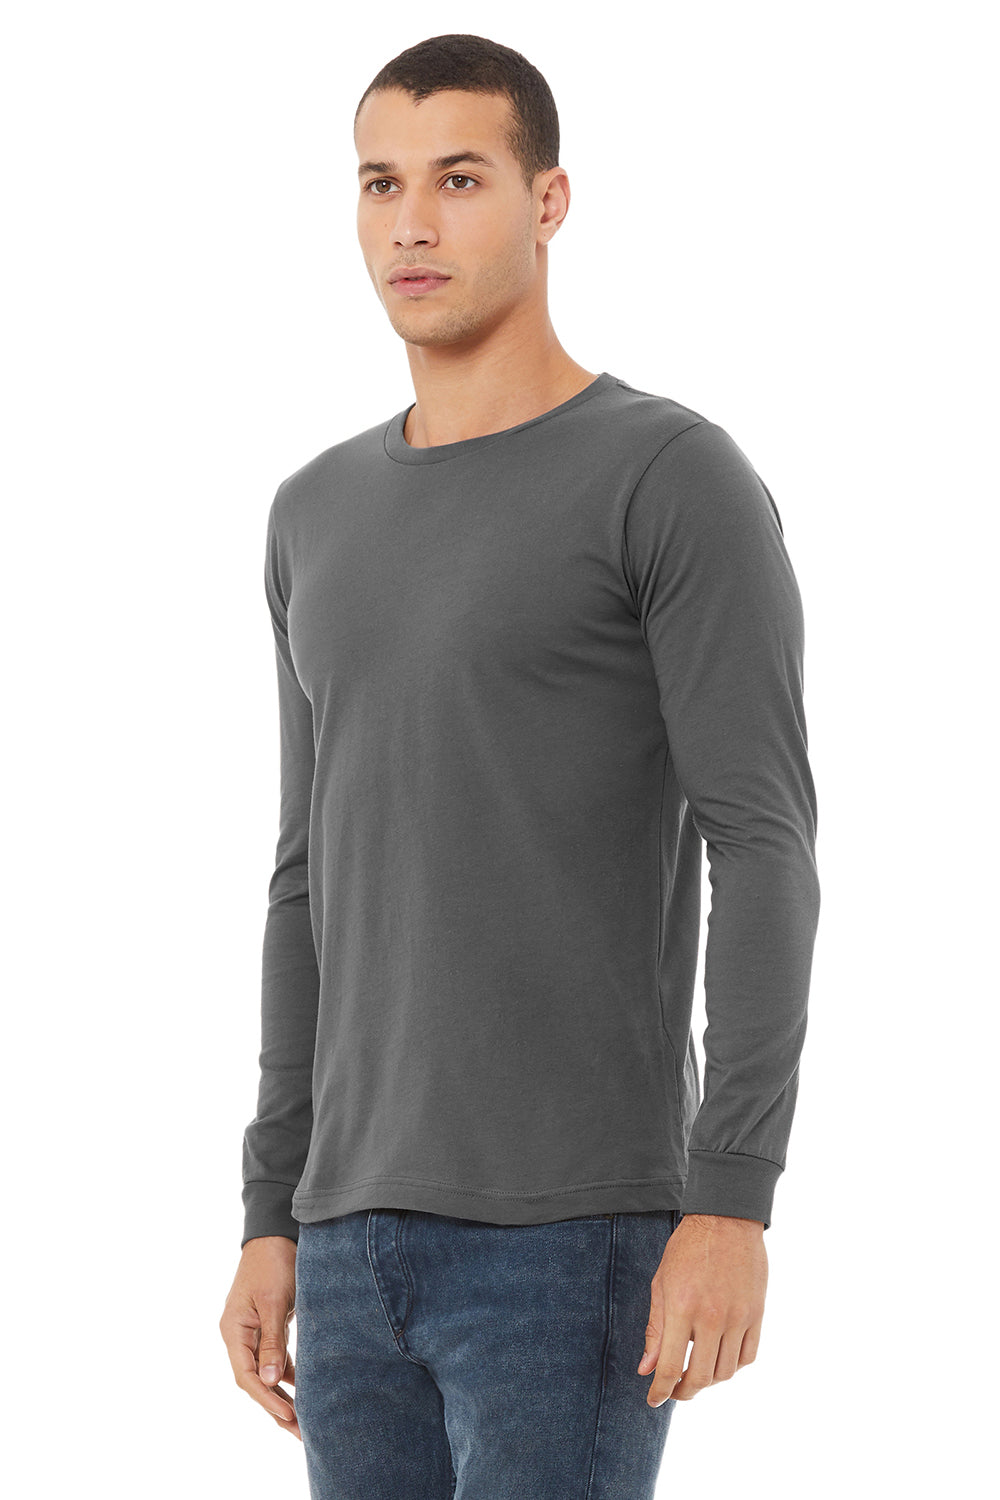 Bella + Canvas BC3501/3501 Mens Jersey Long Sleeve Crewneck T-Shirt Asphalt Grey Model 3Q